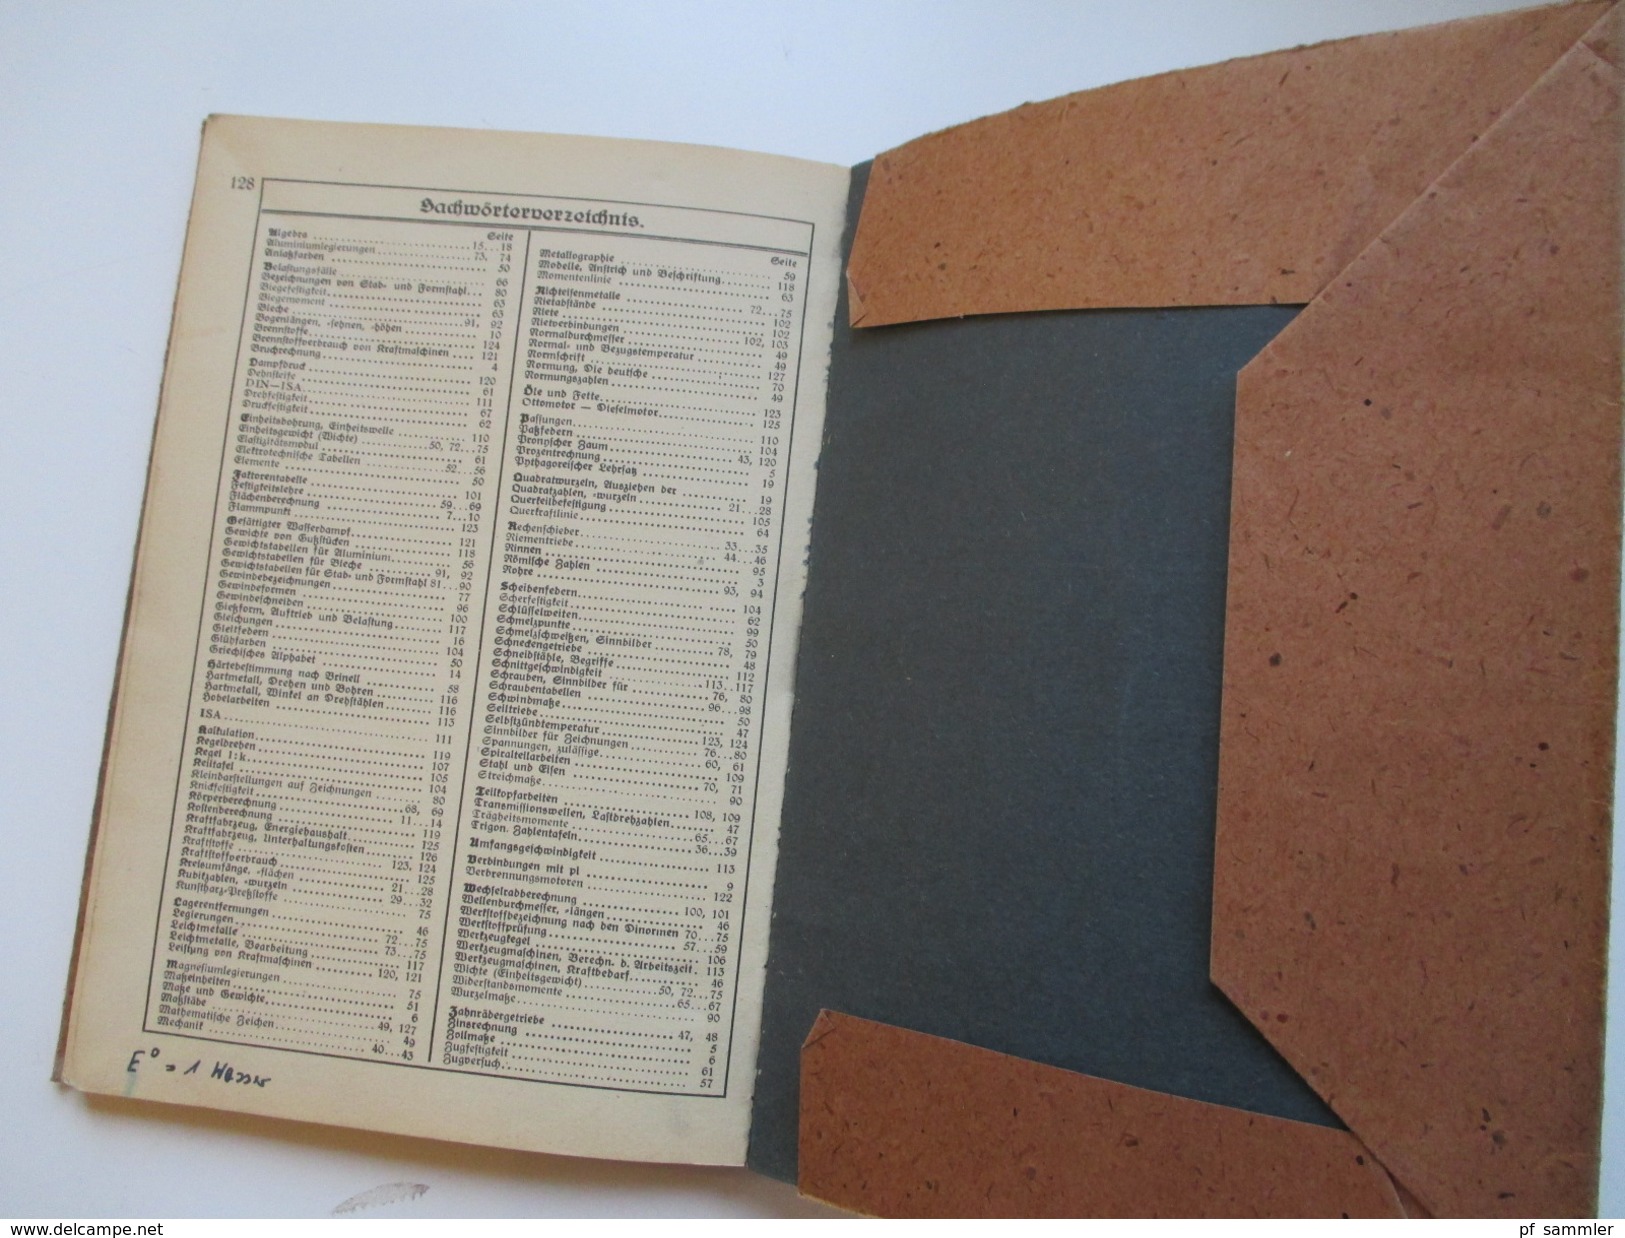 Schulbuch 1949 Formeln Und Tabellen Für Das Metallgewerbe. Gebrüder Jänecke Buchverlag Hannover. Viele Abbildungen!! - School Books